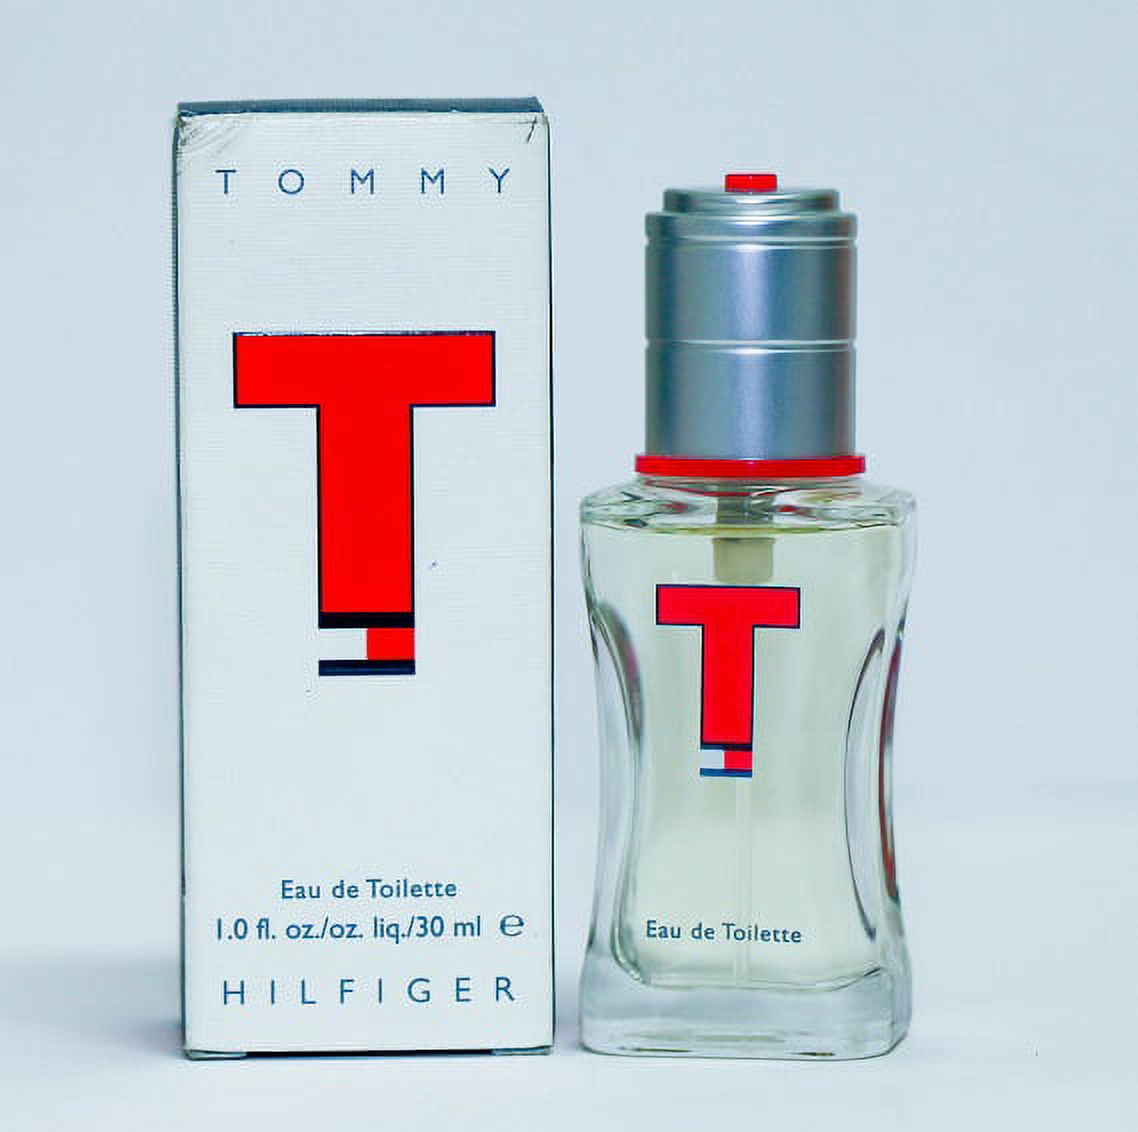 Tommy Hilfiger Tommy / Tommy Hilfiger Cologne Spray 0.5 oz (15 ml) (M)  719346236836 - Fragrances & Beauty, Tommy - Jomashop